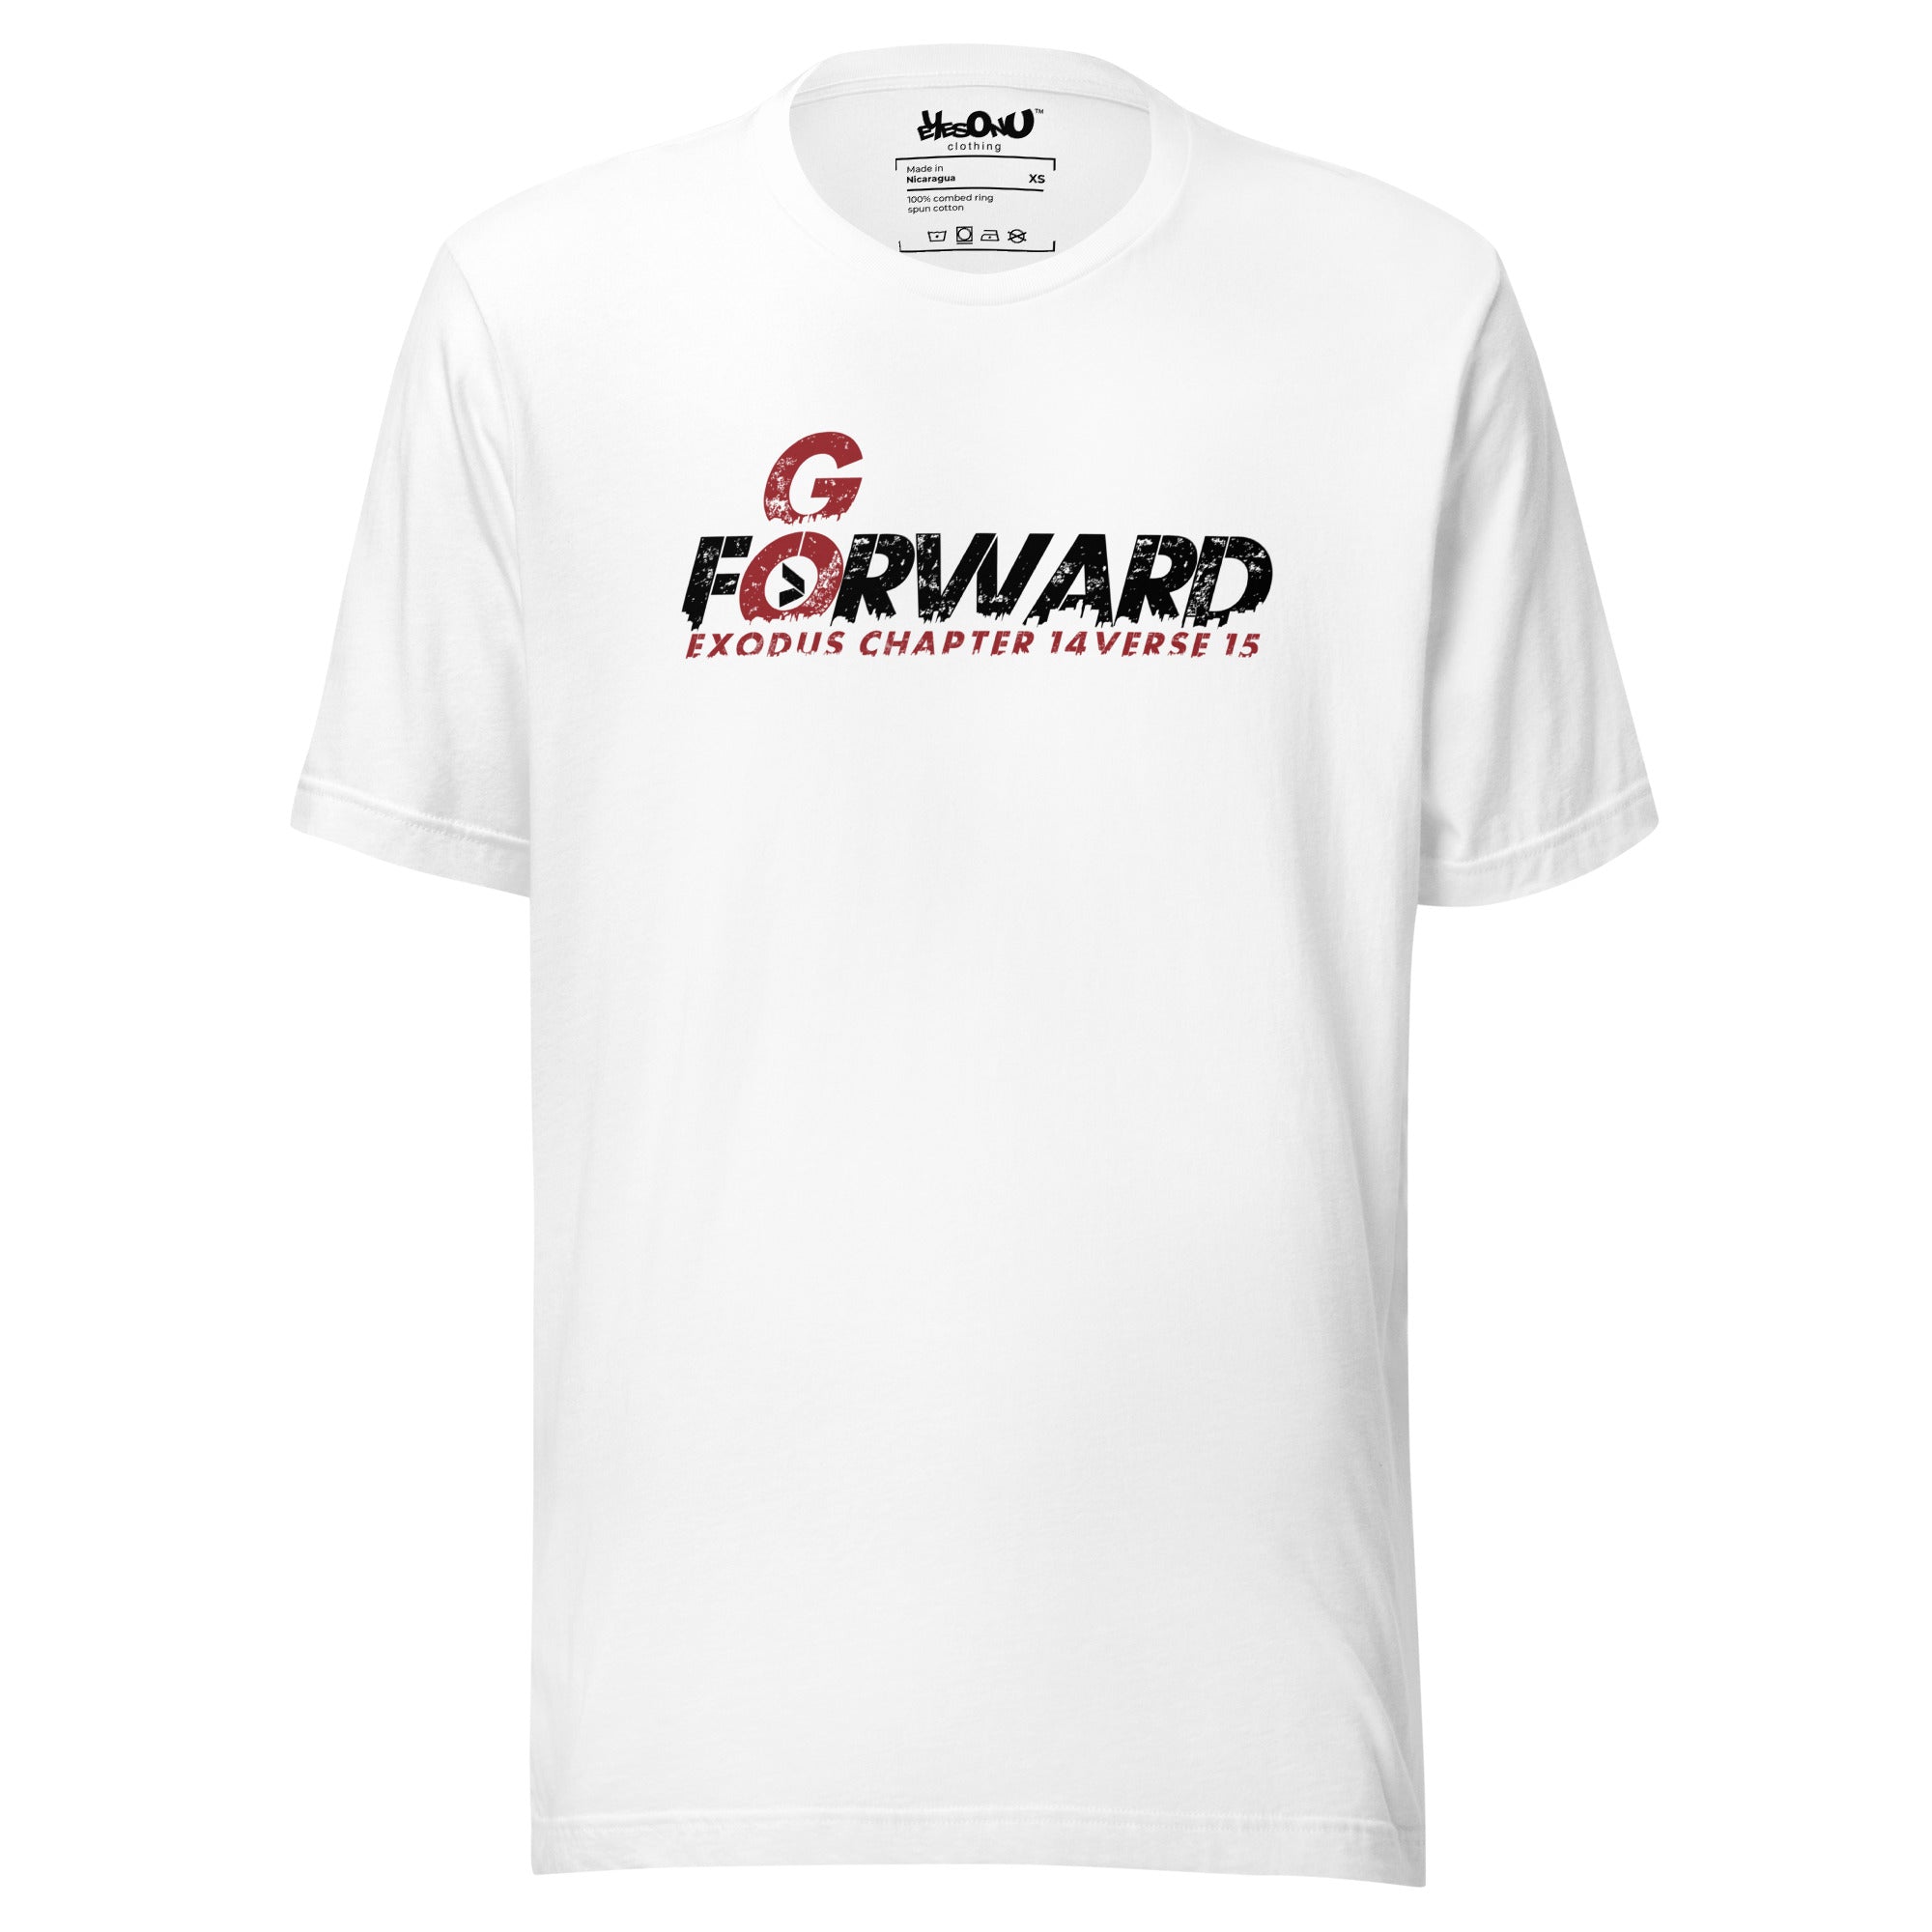 EGA - Go Forward T-Shirt (4 colors)